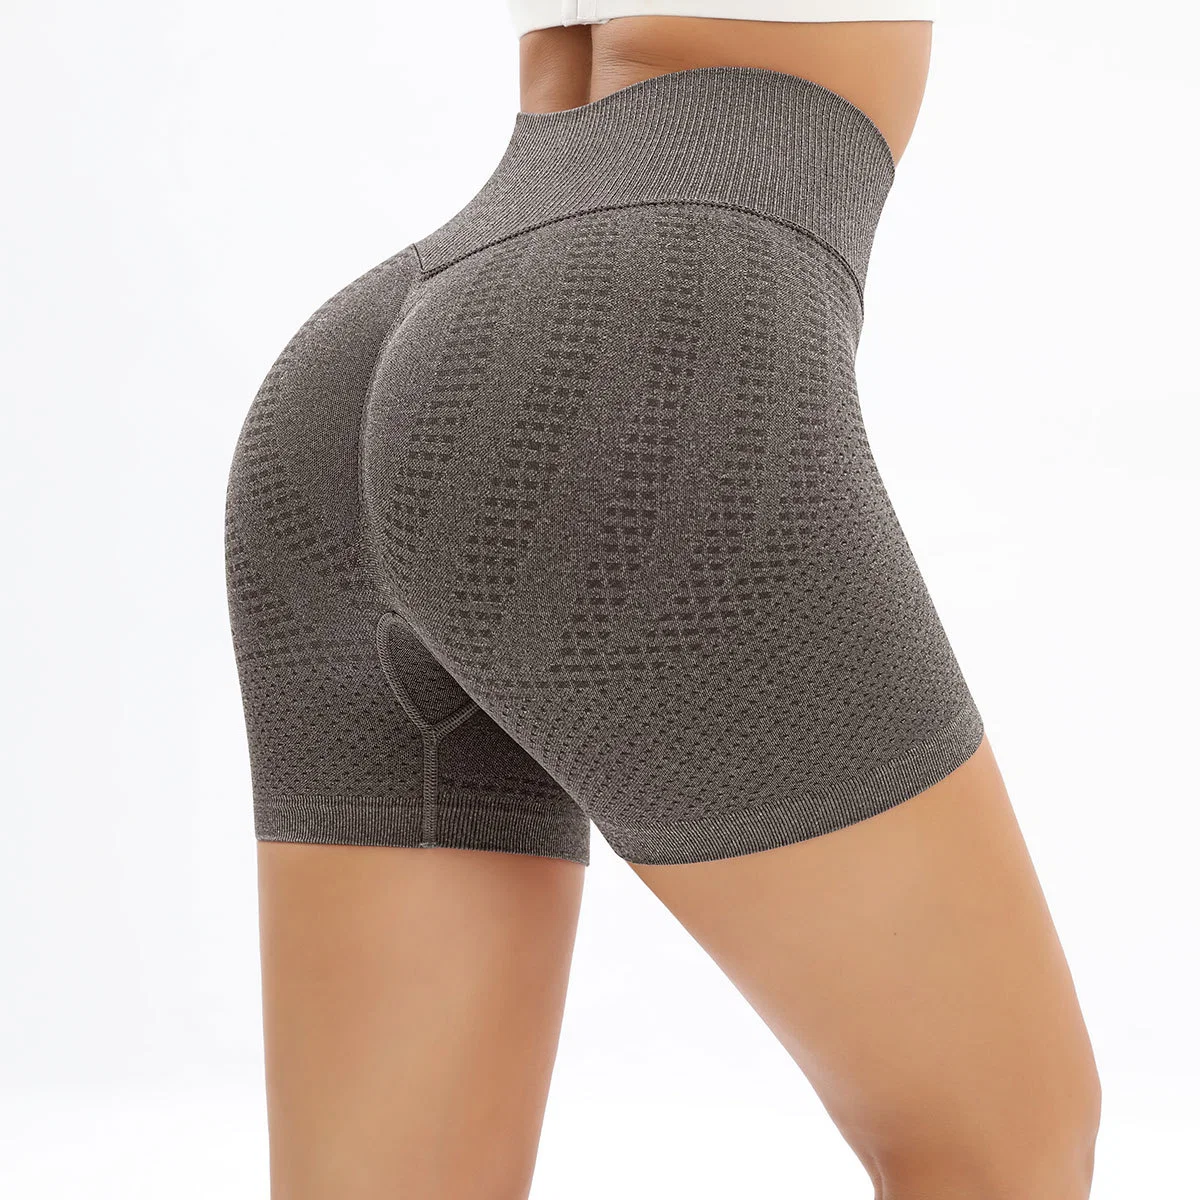 New Seamless Knit Leggings Women's High Waist Tight Butt Lift Fitness Shorts